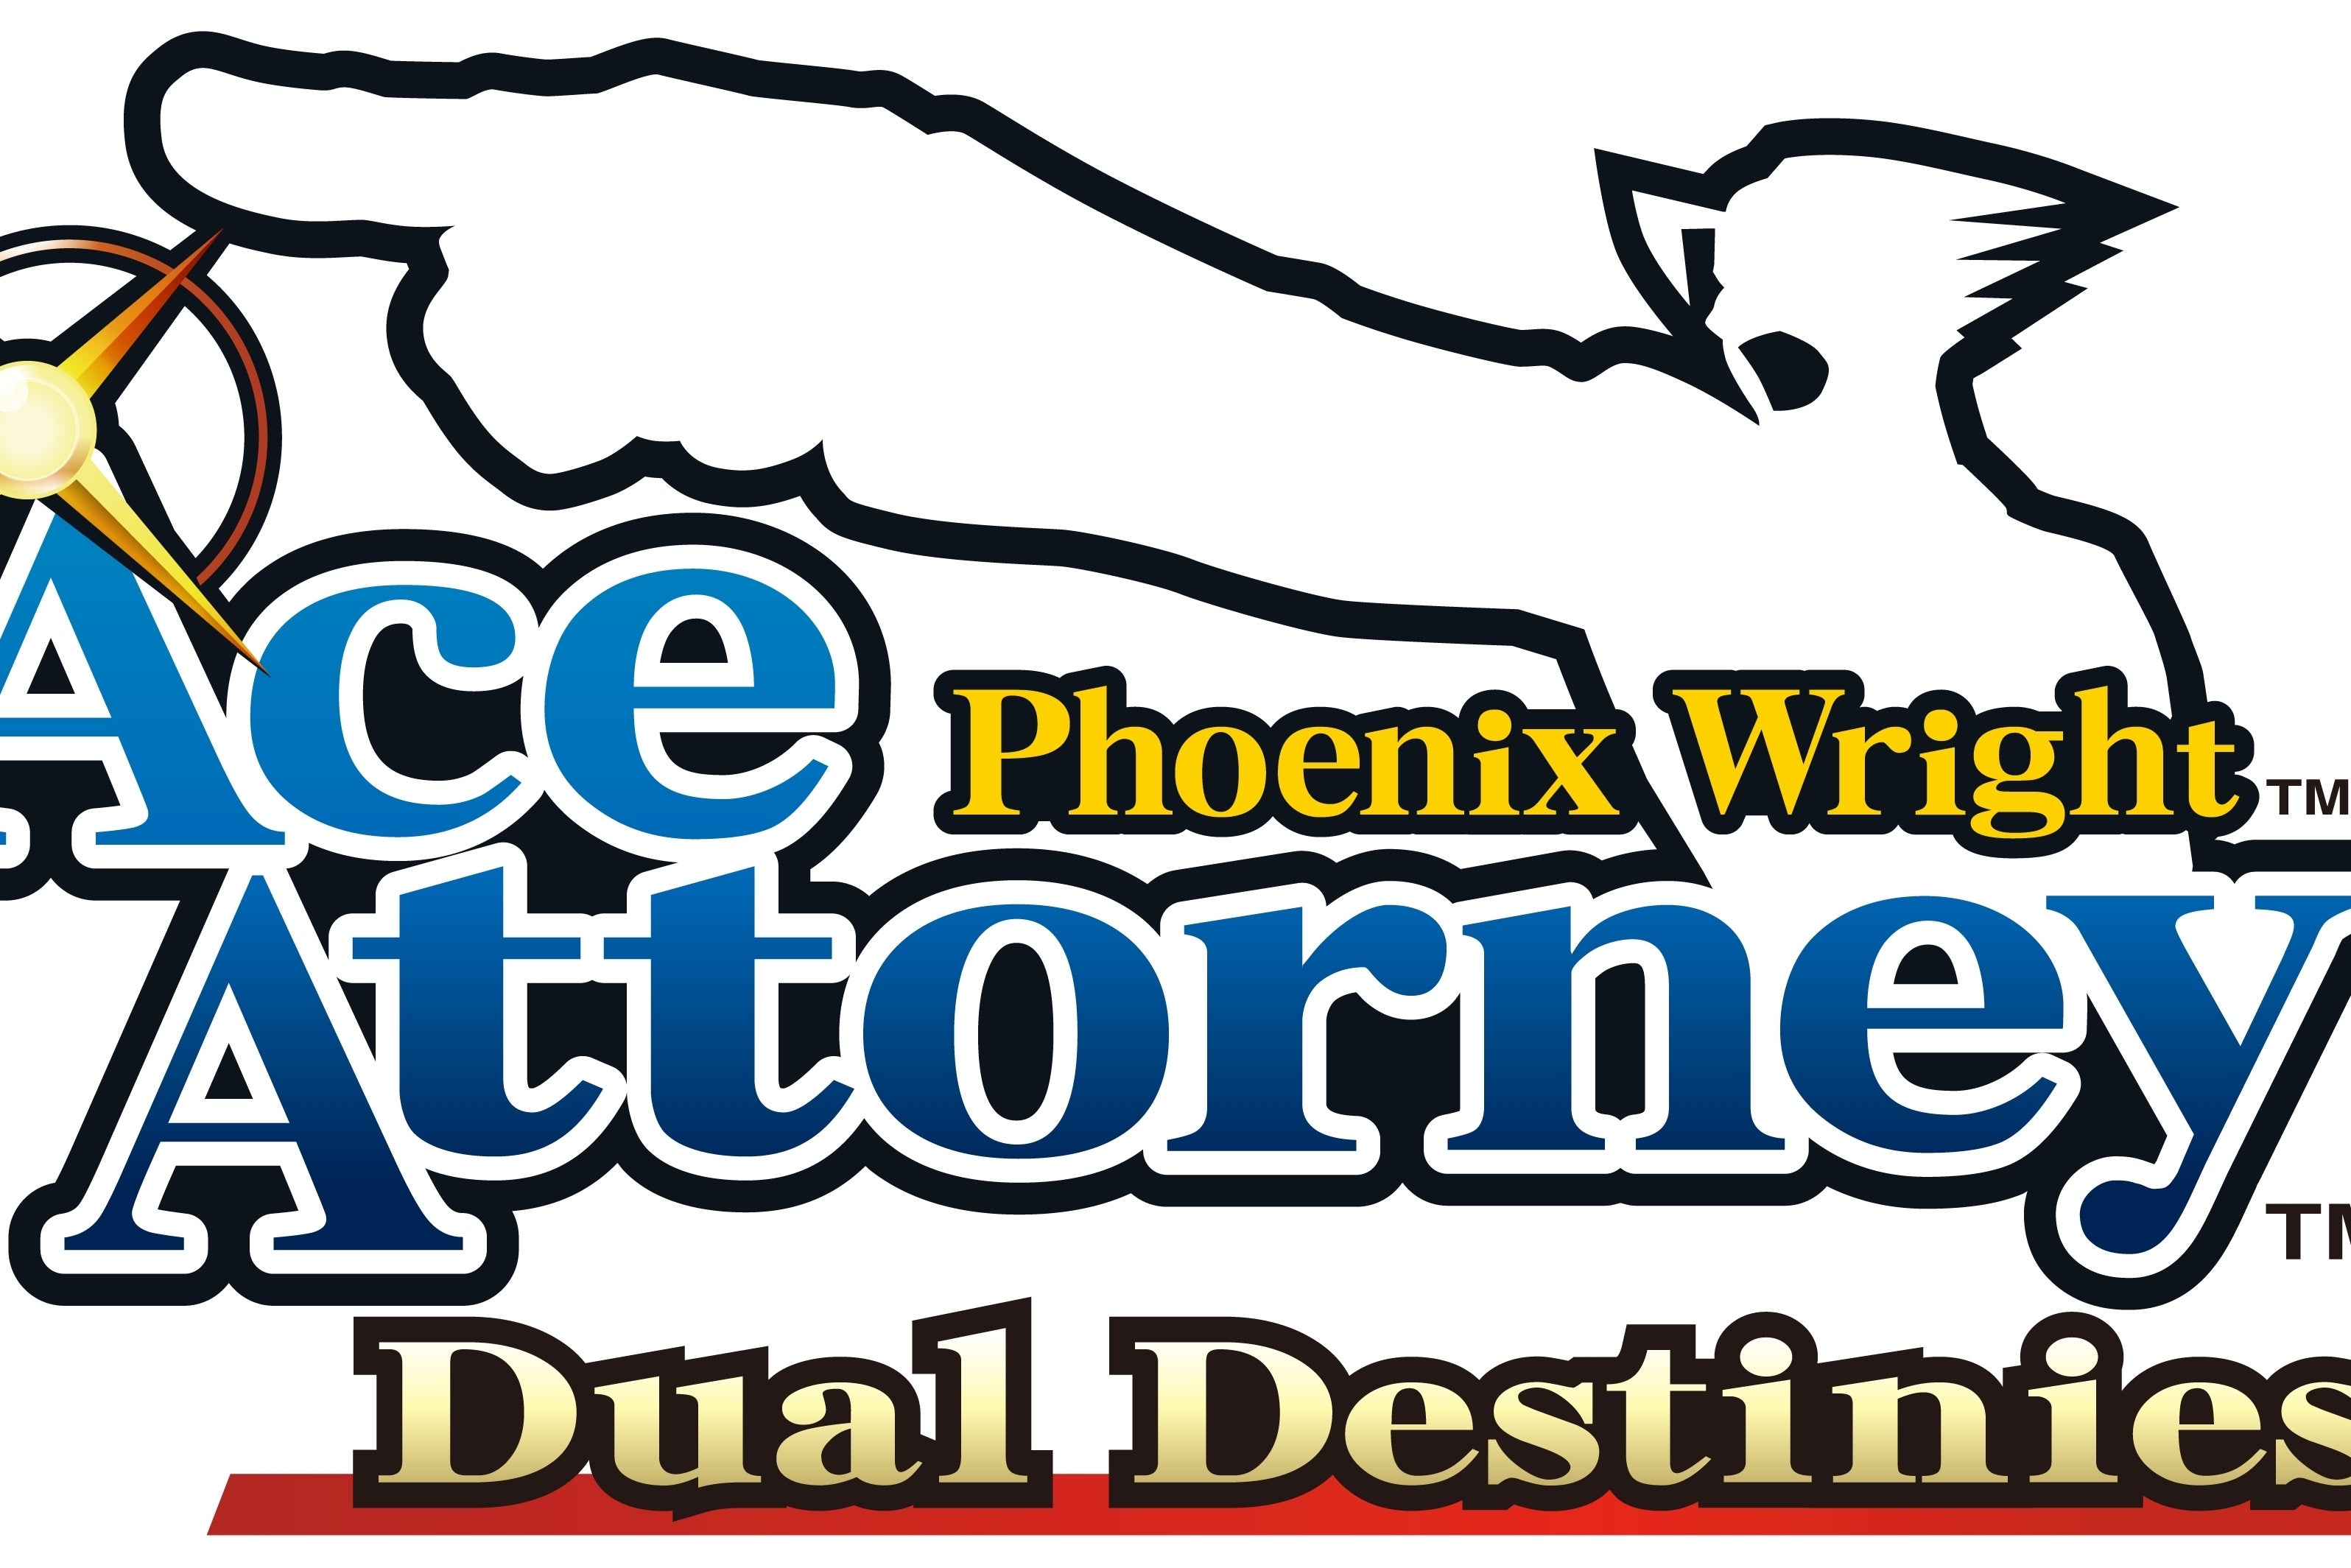 Immagine di Perché Phoenix Wright: Ace Attorney 5 sarà solo digitale?